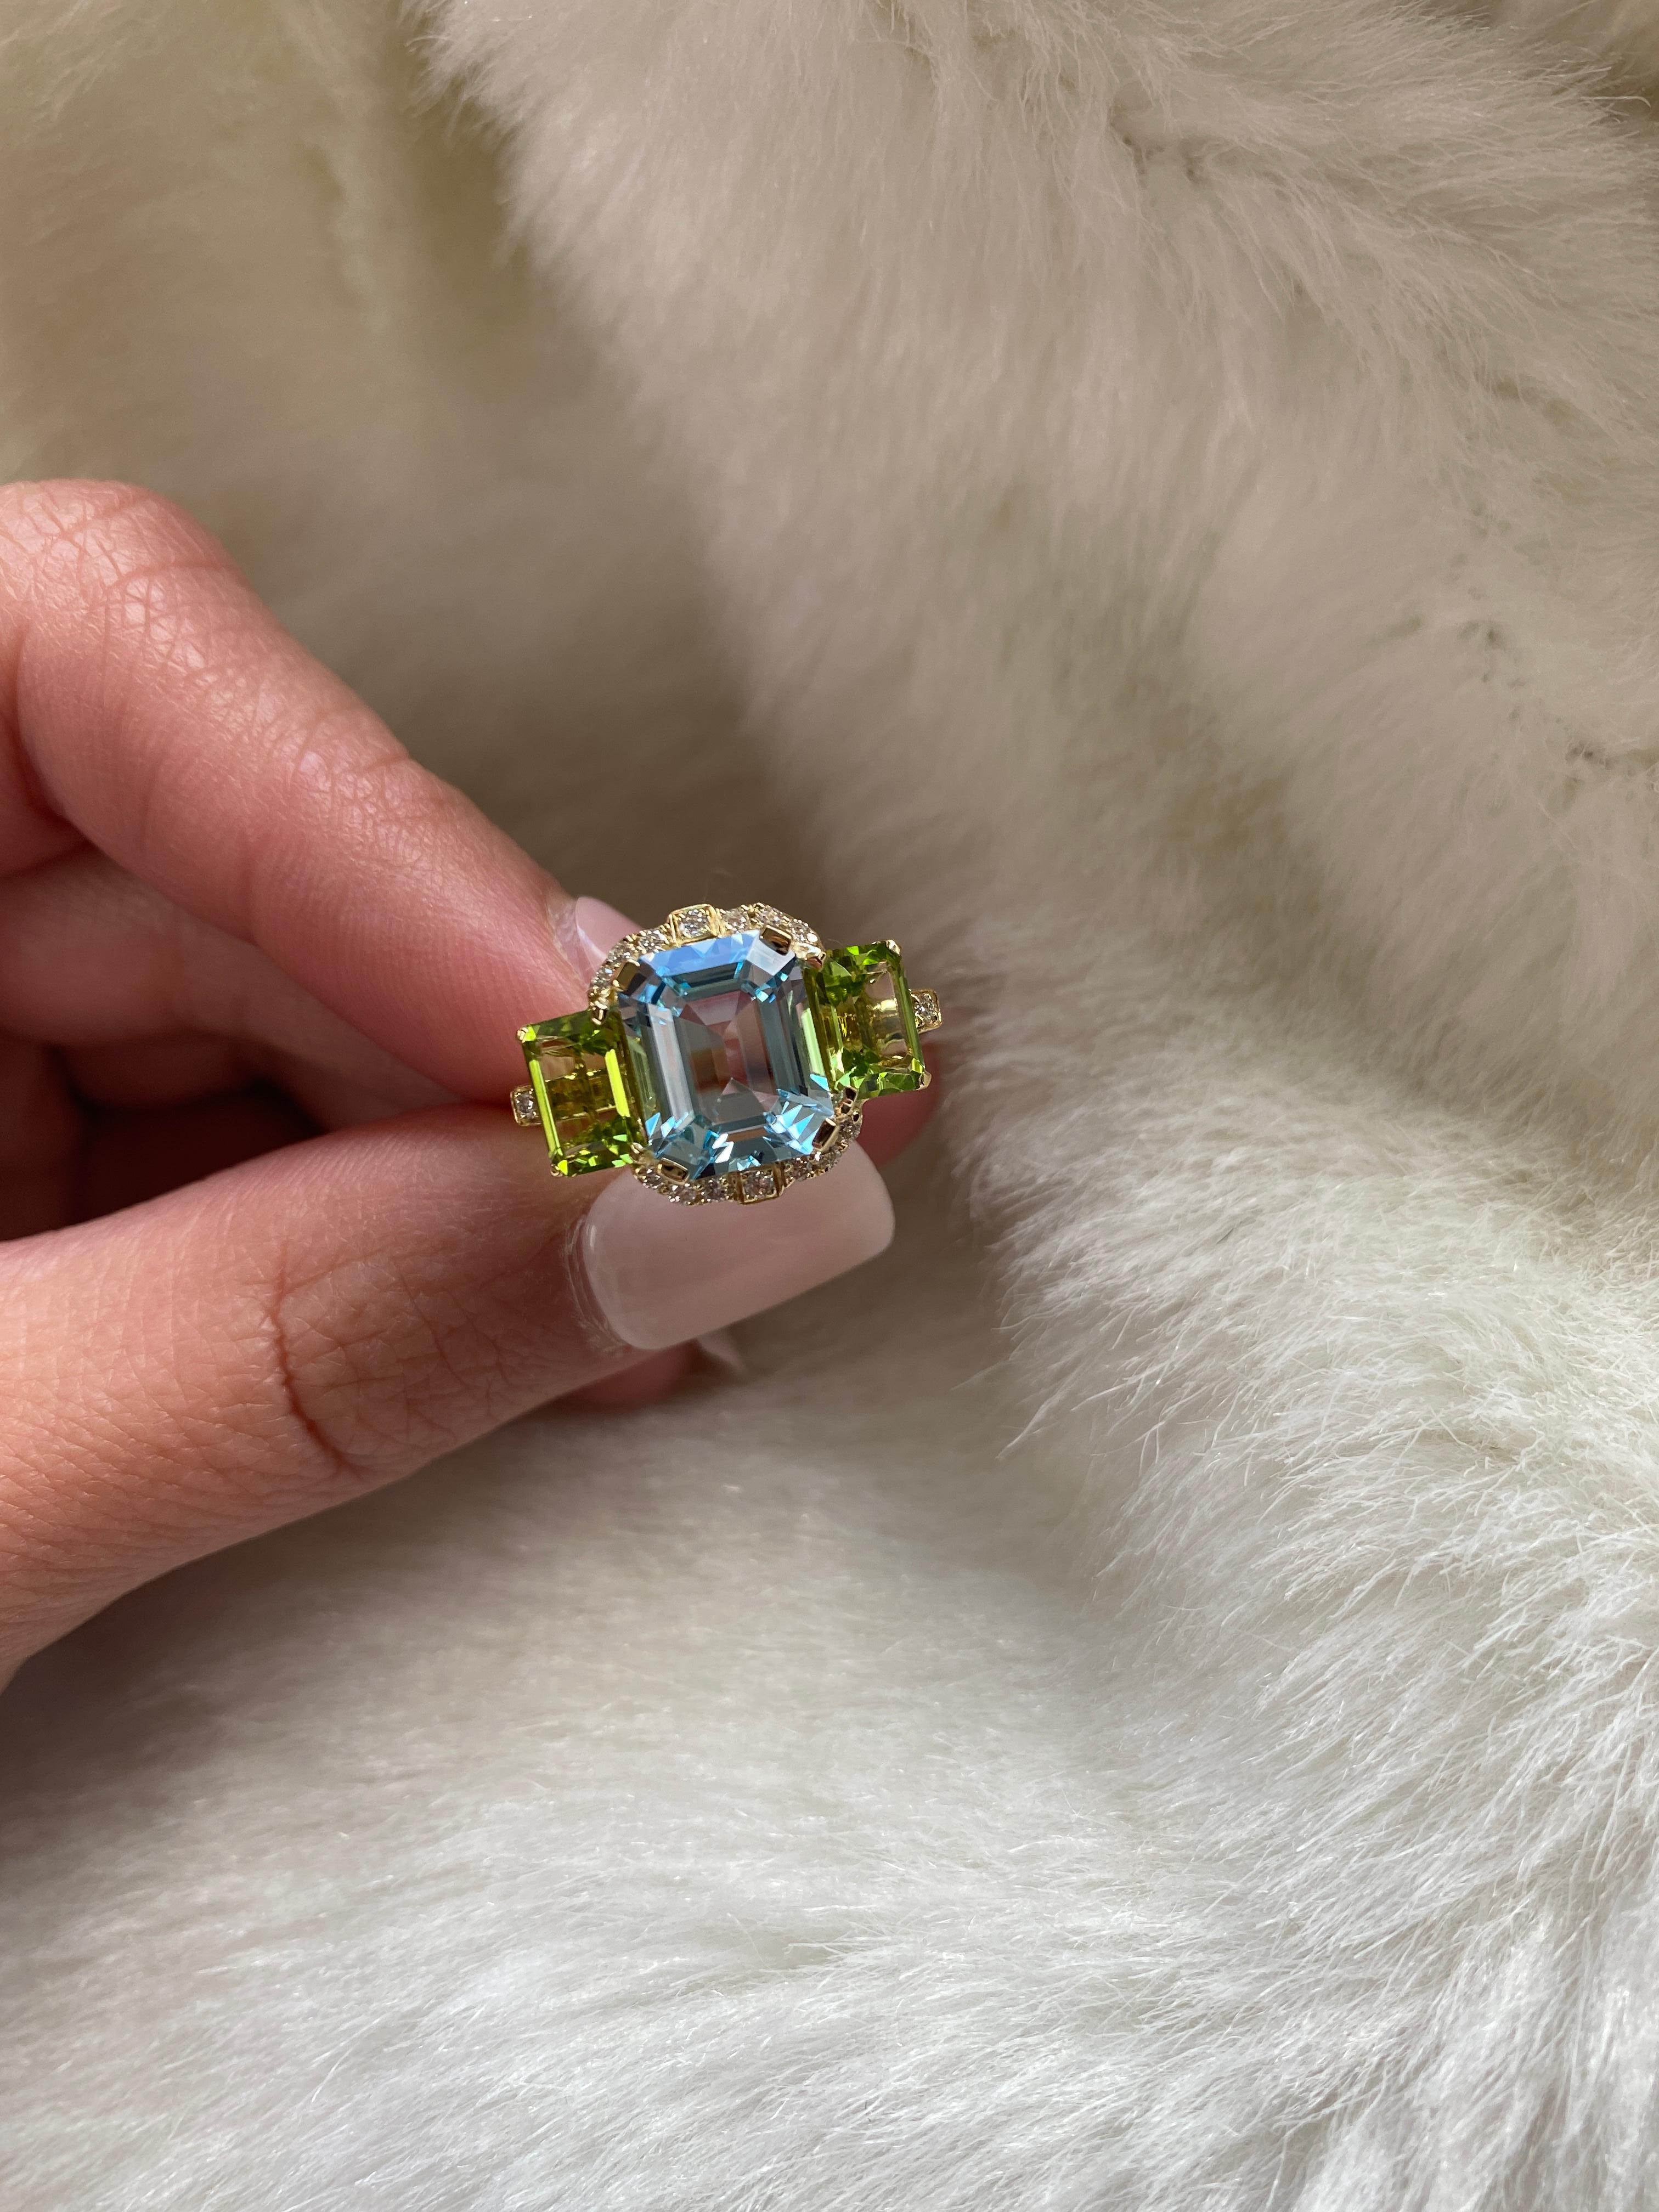 Eine perfekte Kombination aus Blautopas und Peridot ist dieser 3-Stein-Ring im Smaragdschliff mit Diamanten in 18 Karat Gelbgold. Dieses Stück aus unserer beliebten 'Gossip' Collection'S hat einen Hauch von Schockwert.

* Steingröße: 10 x 8 - 7 x 5